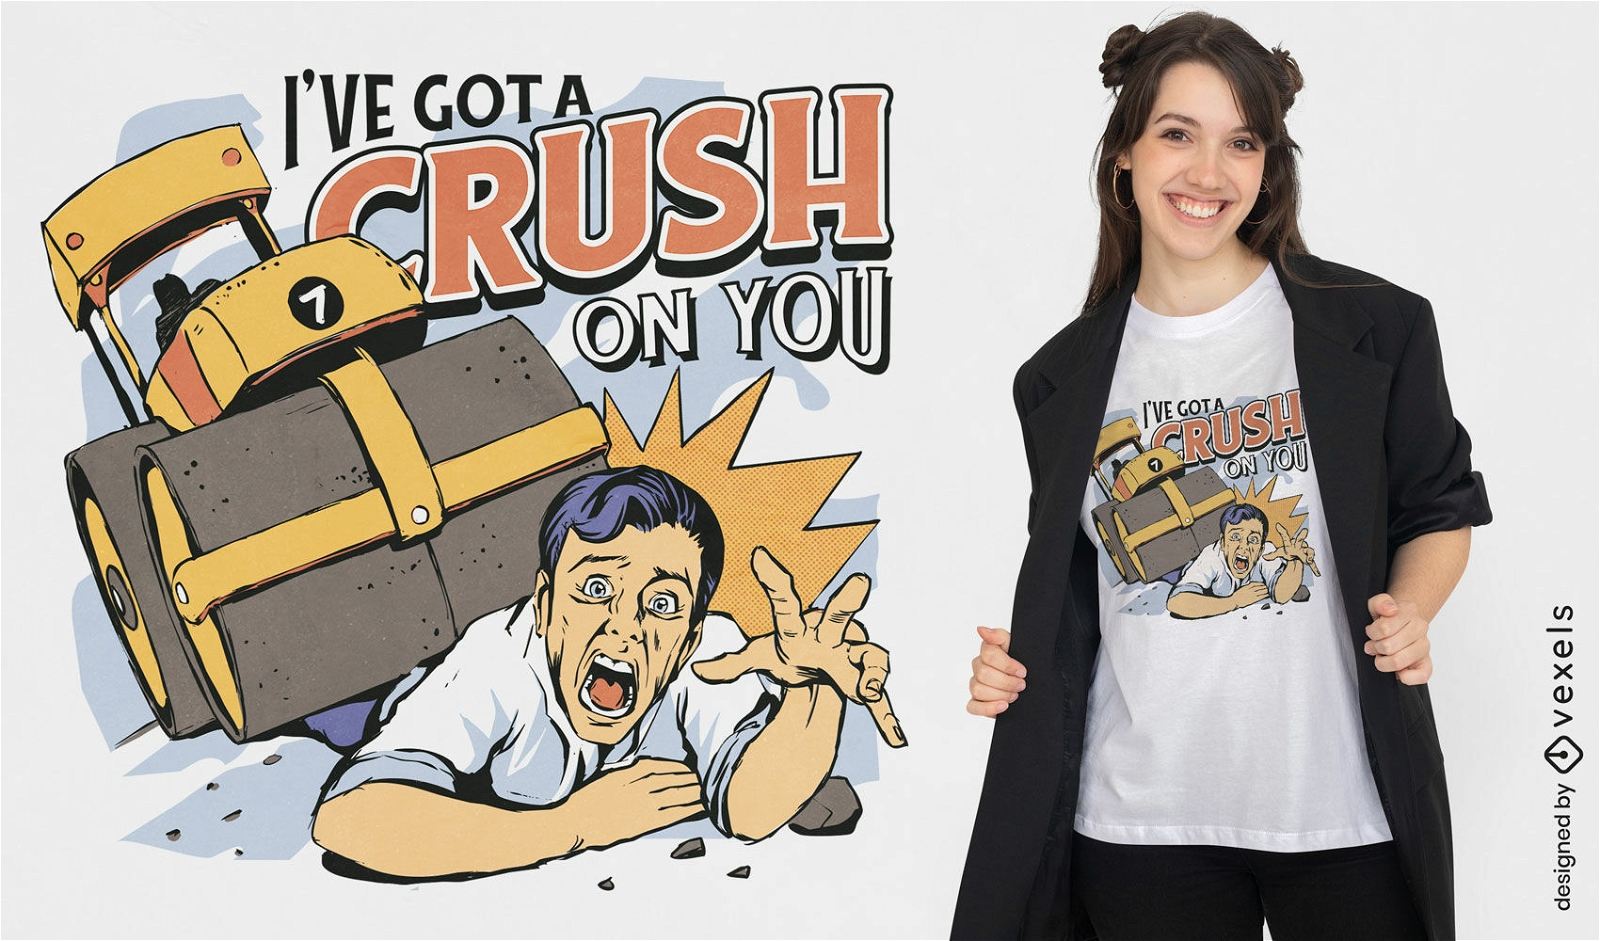 Steamroller crush on you cita el diseño de la camiseta